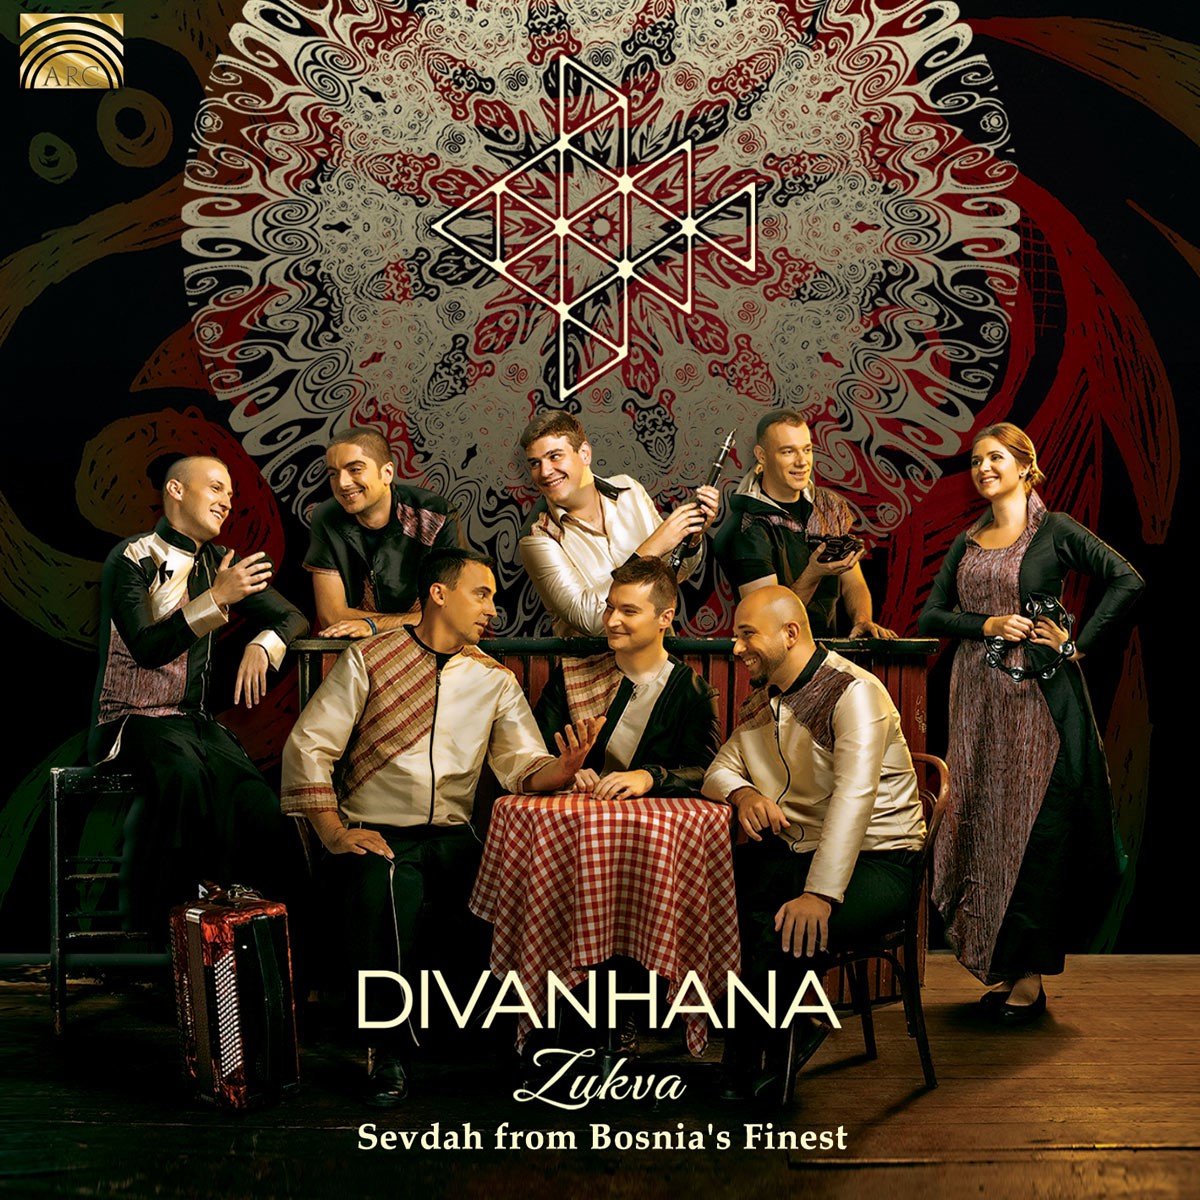 Divanhana - Zukva. Sevdah From Bosnia's Finest (CD) - Divanhana